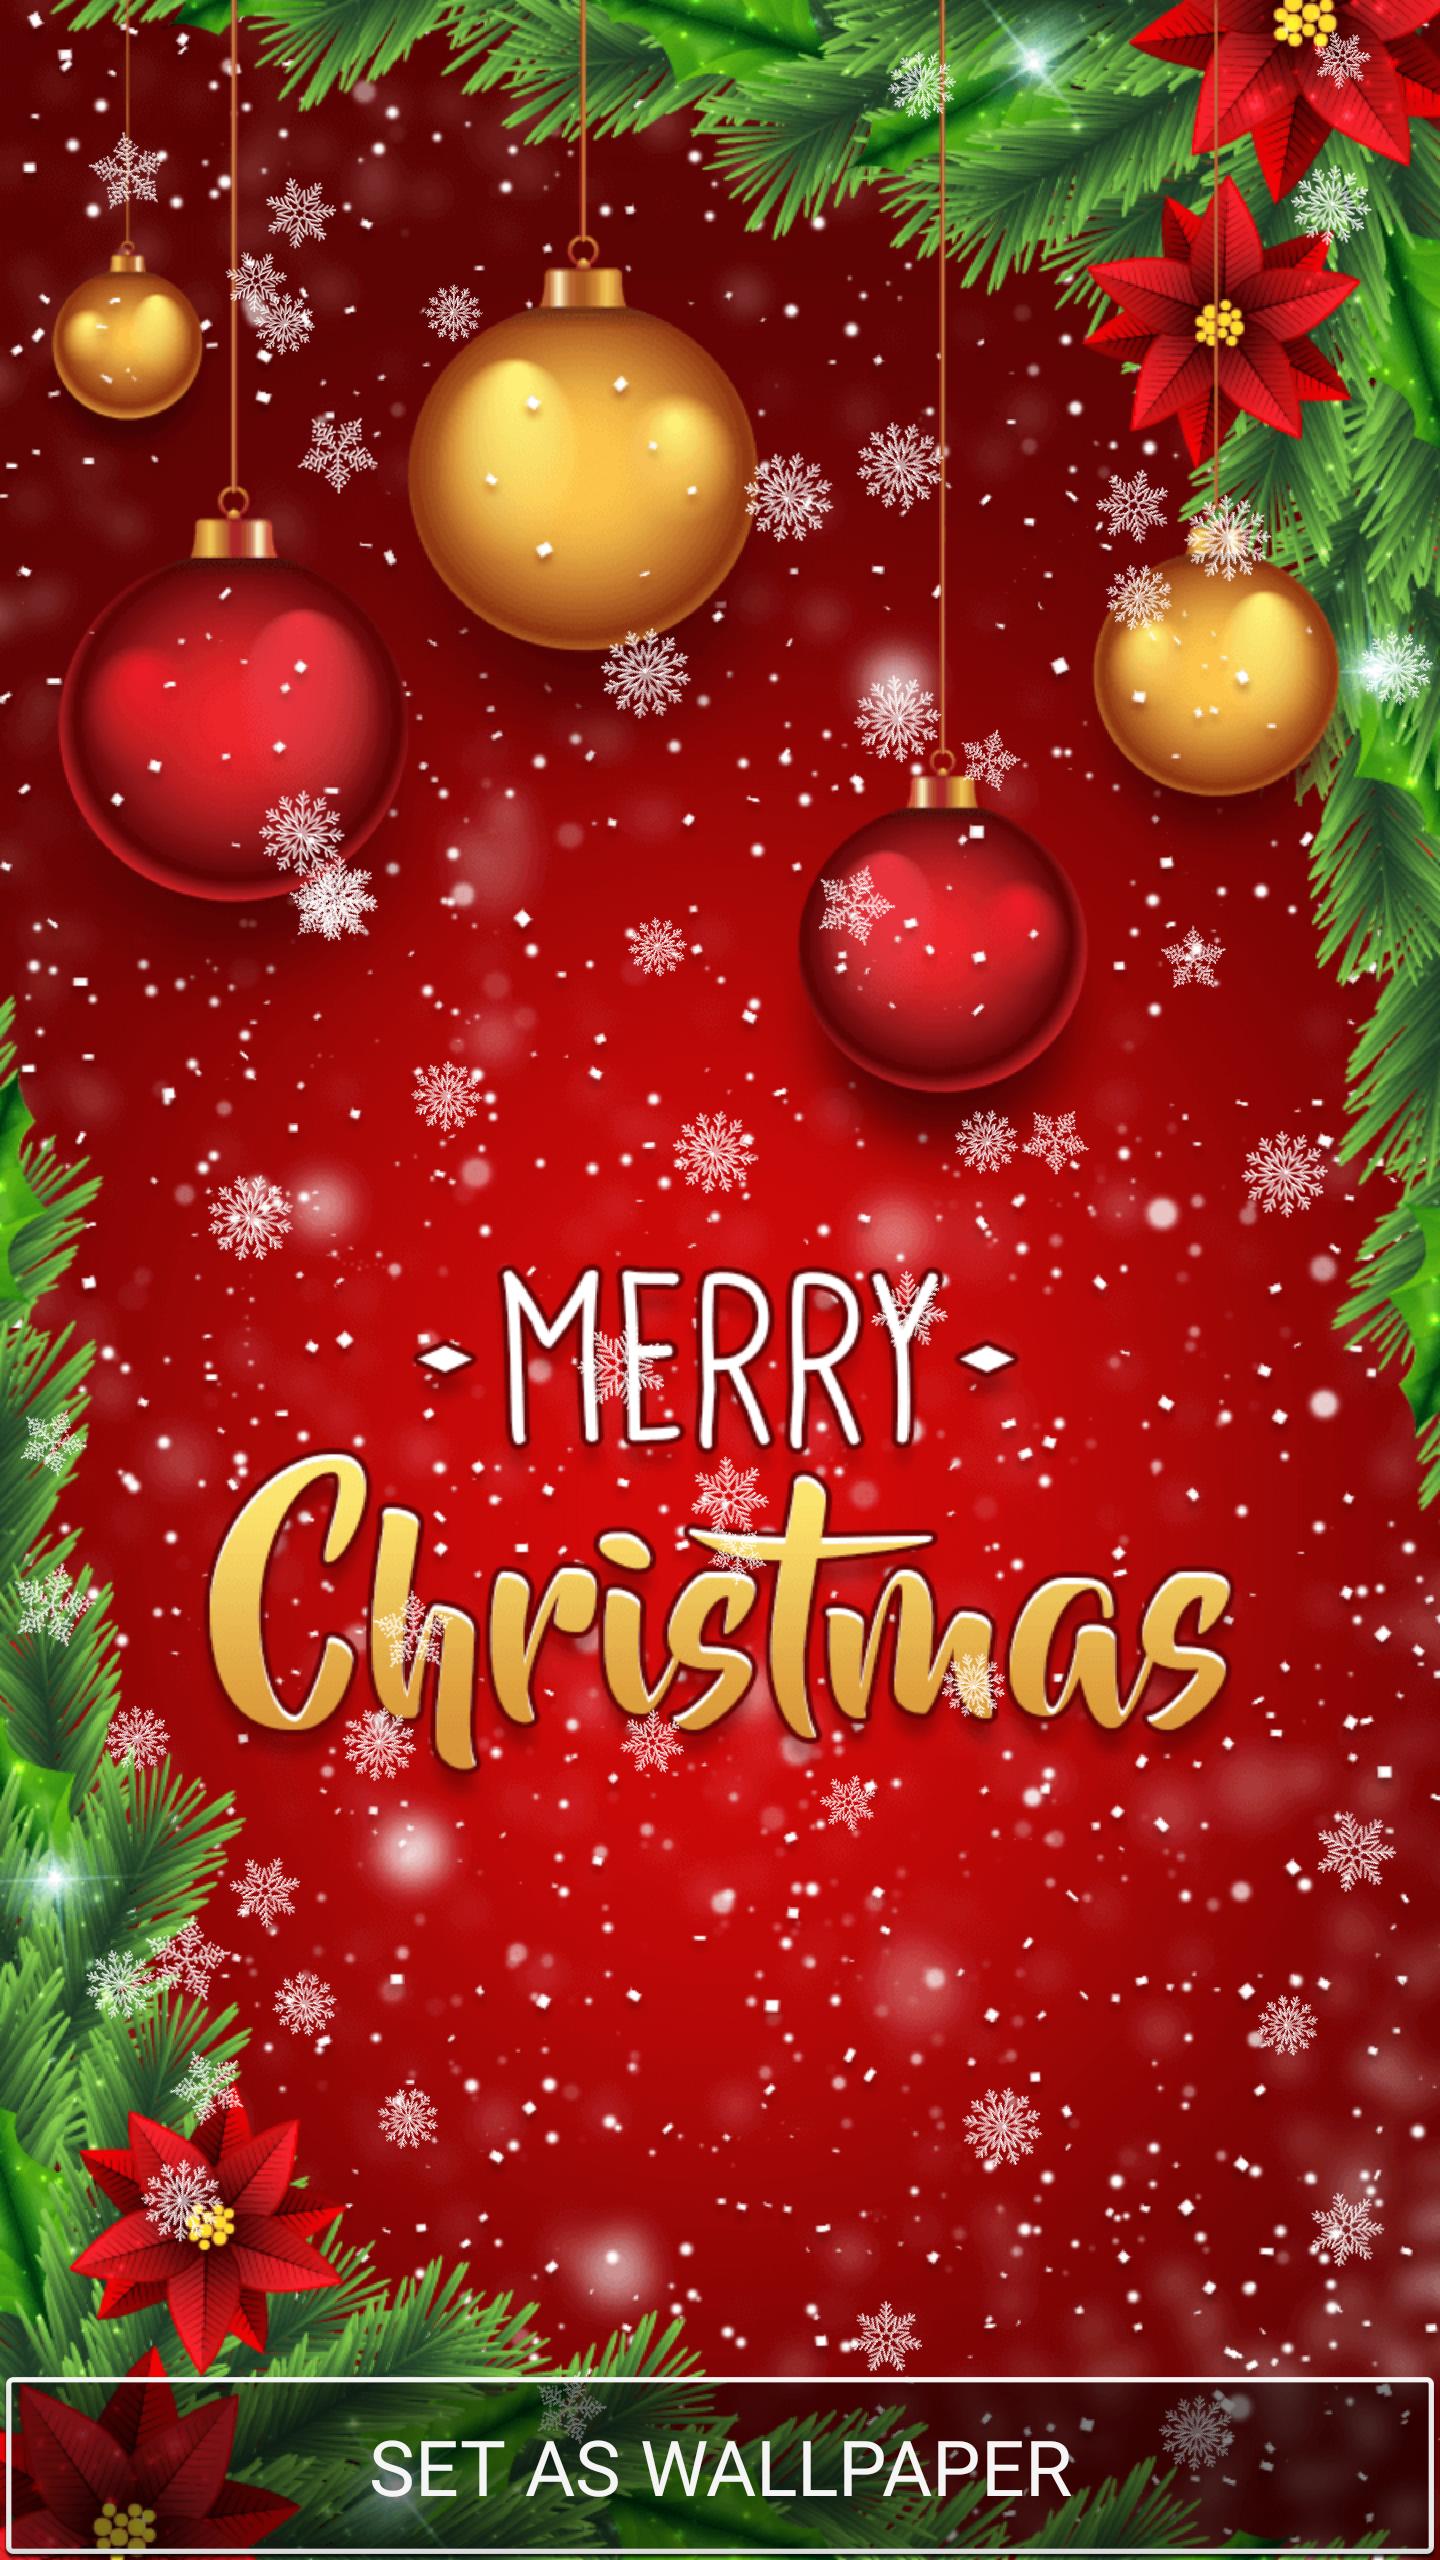 Immagini Sfondi Natalizi Gratis.Sfondi Animati Natale Gratis For Android Apk Download